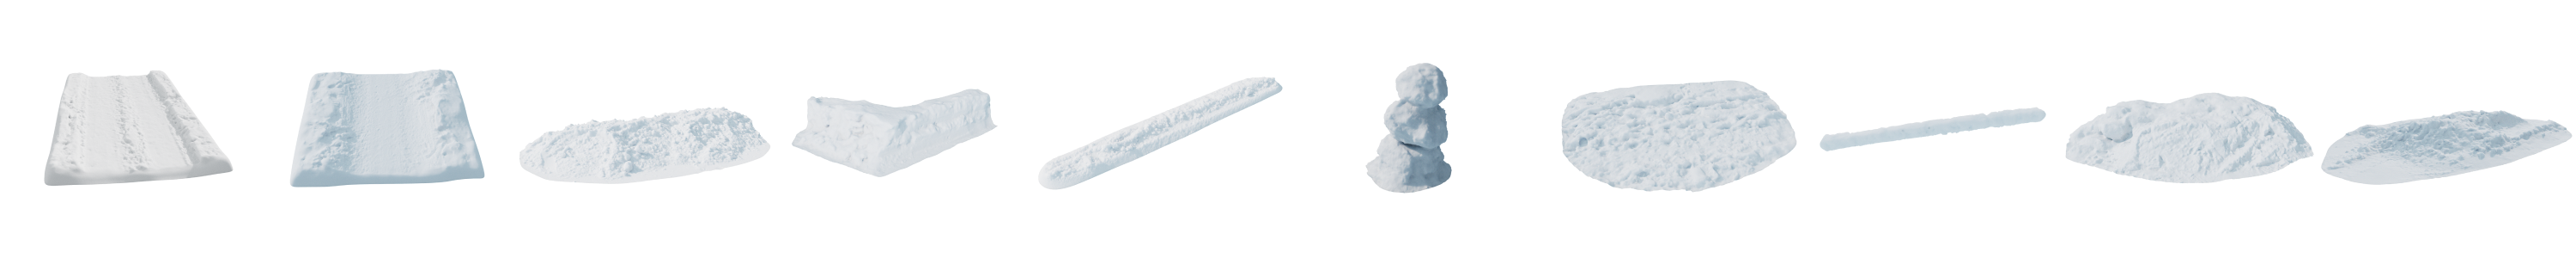 20.雪景模型.png